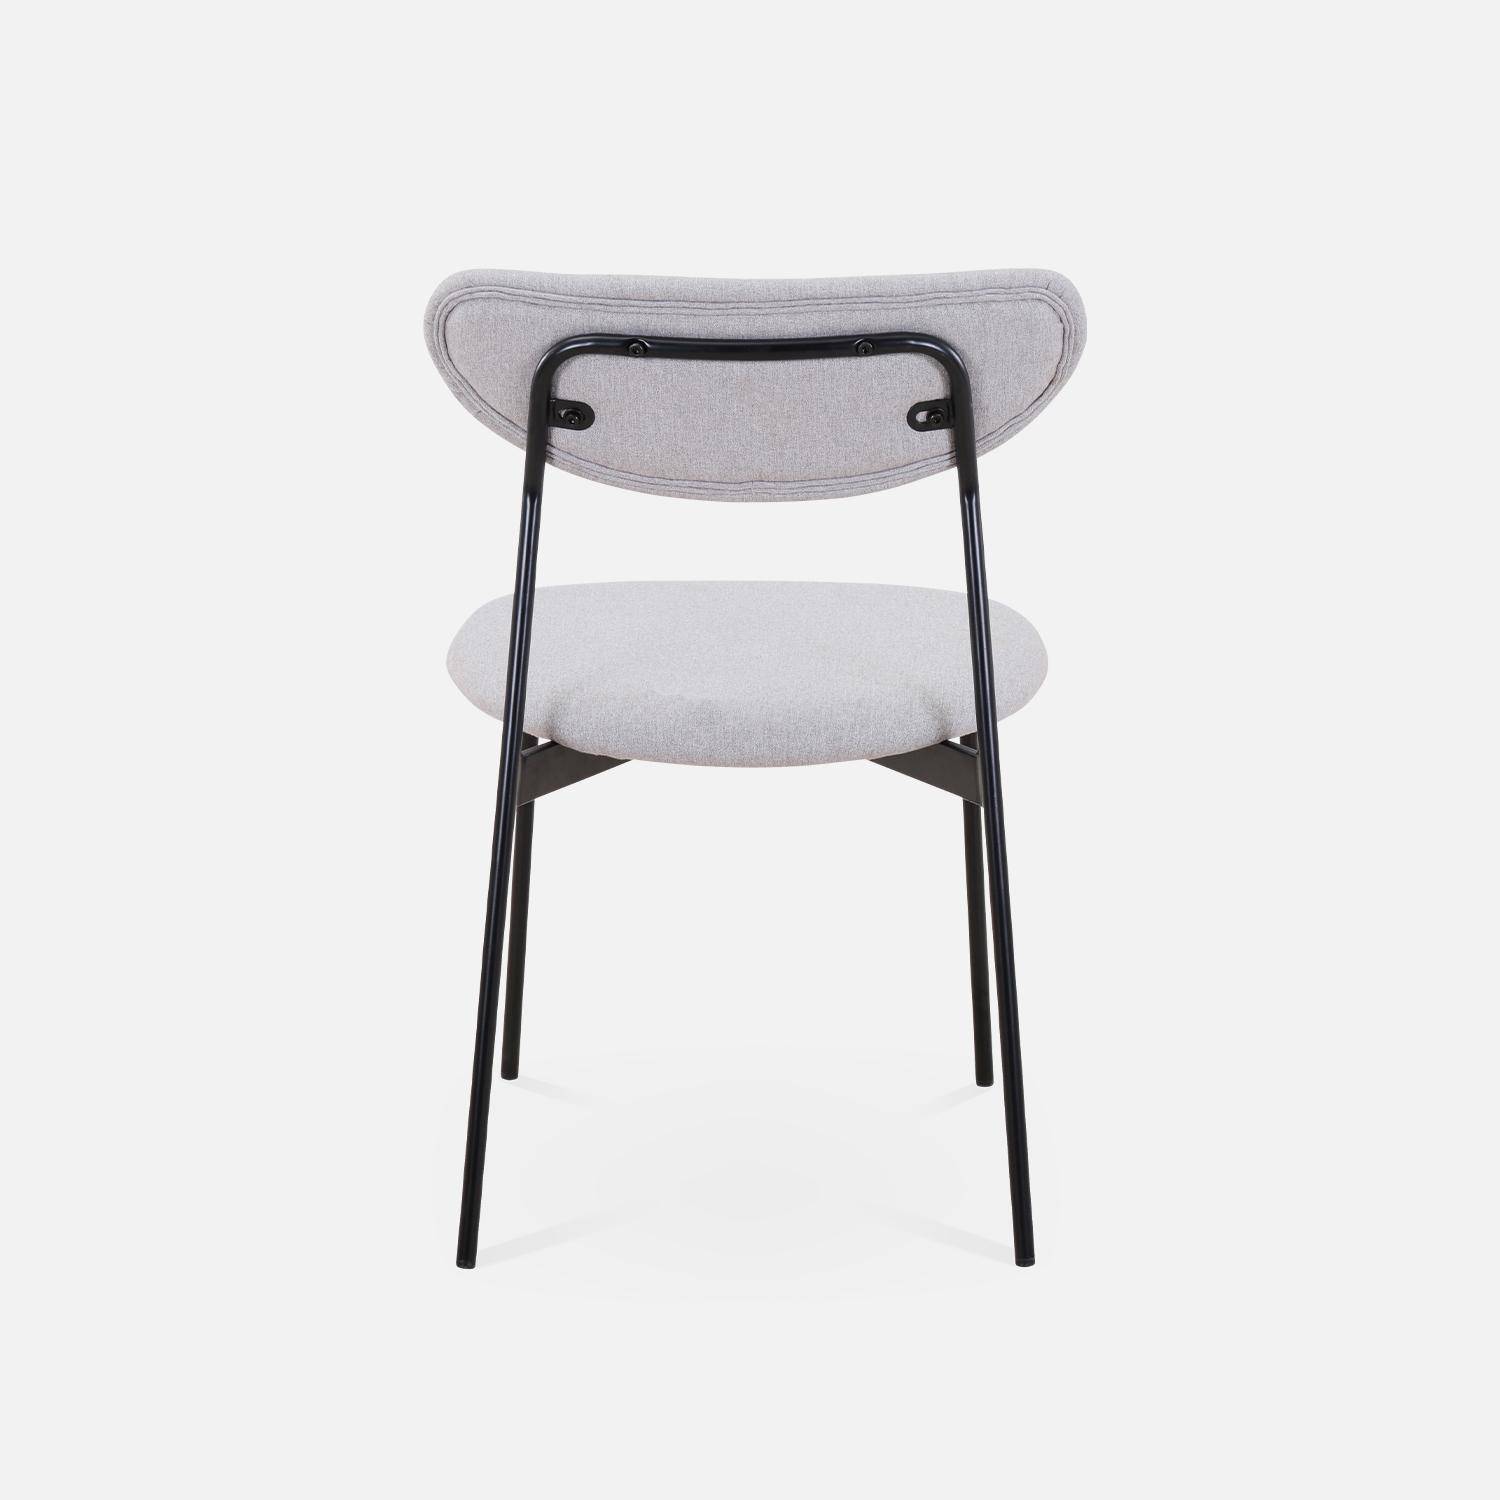 Juego de 4 sillas - Arty - Escandinavas y vintage, asiento y respaldo gris claro, patas de acero  Photo6